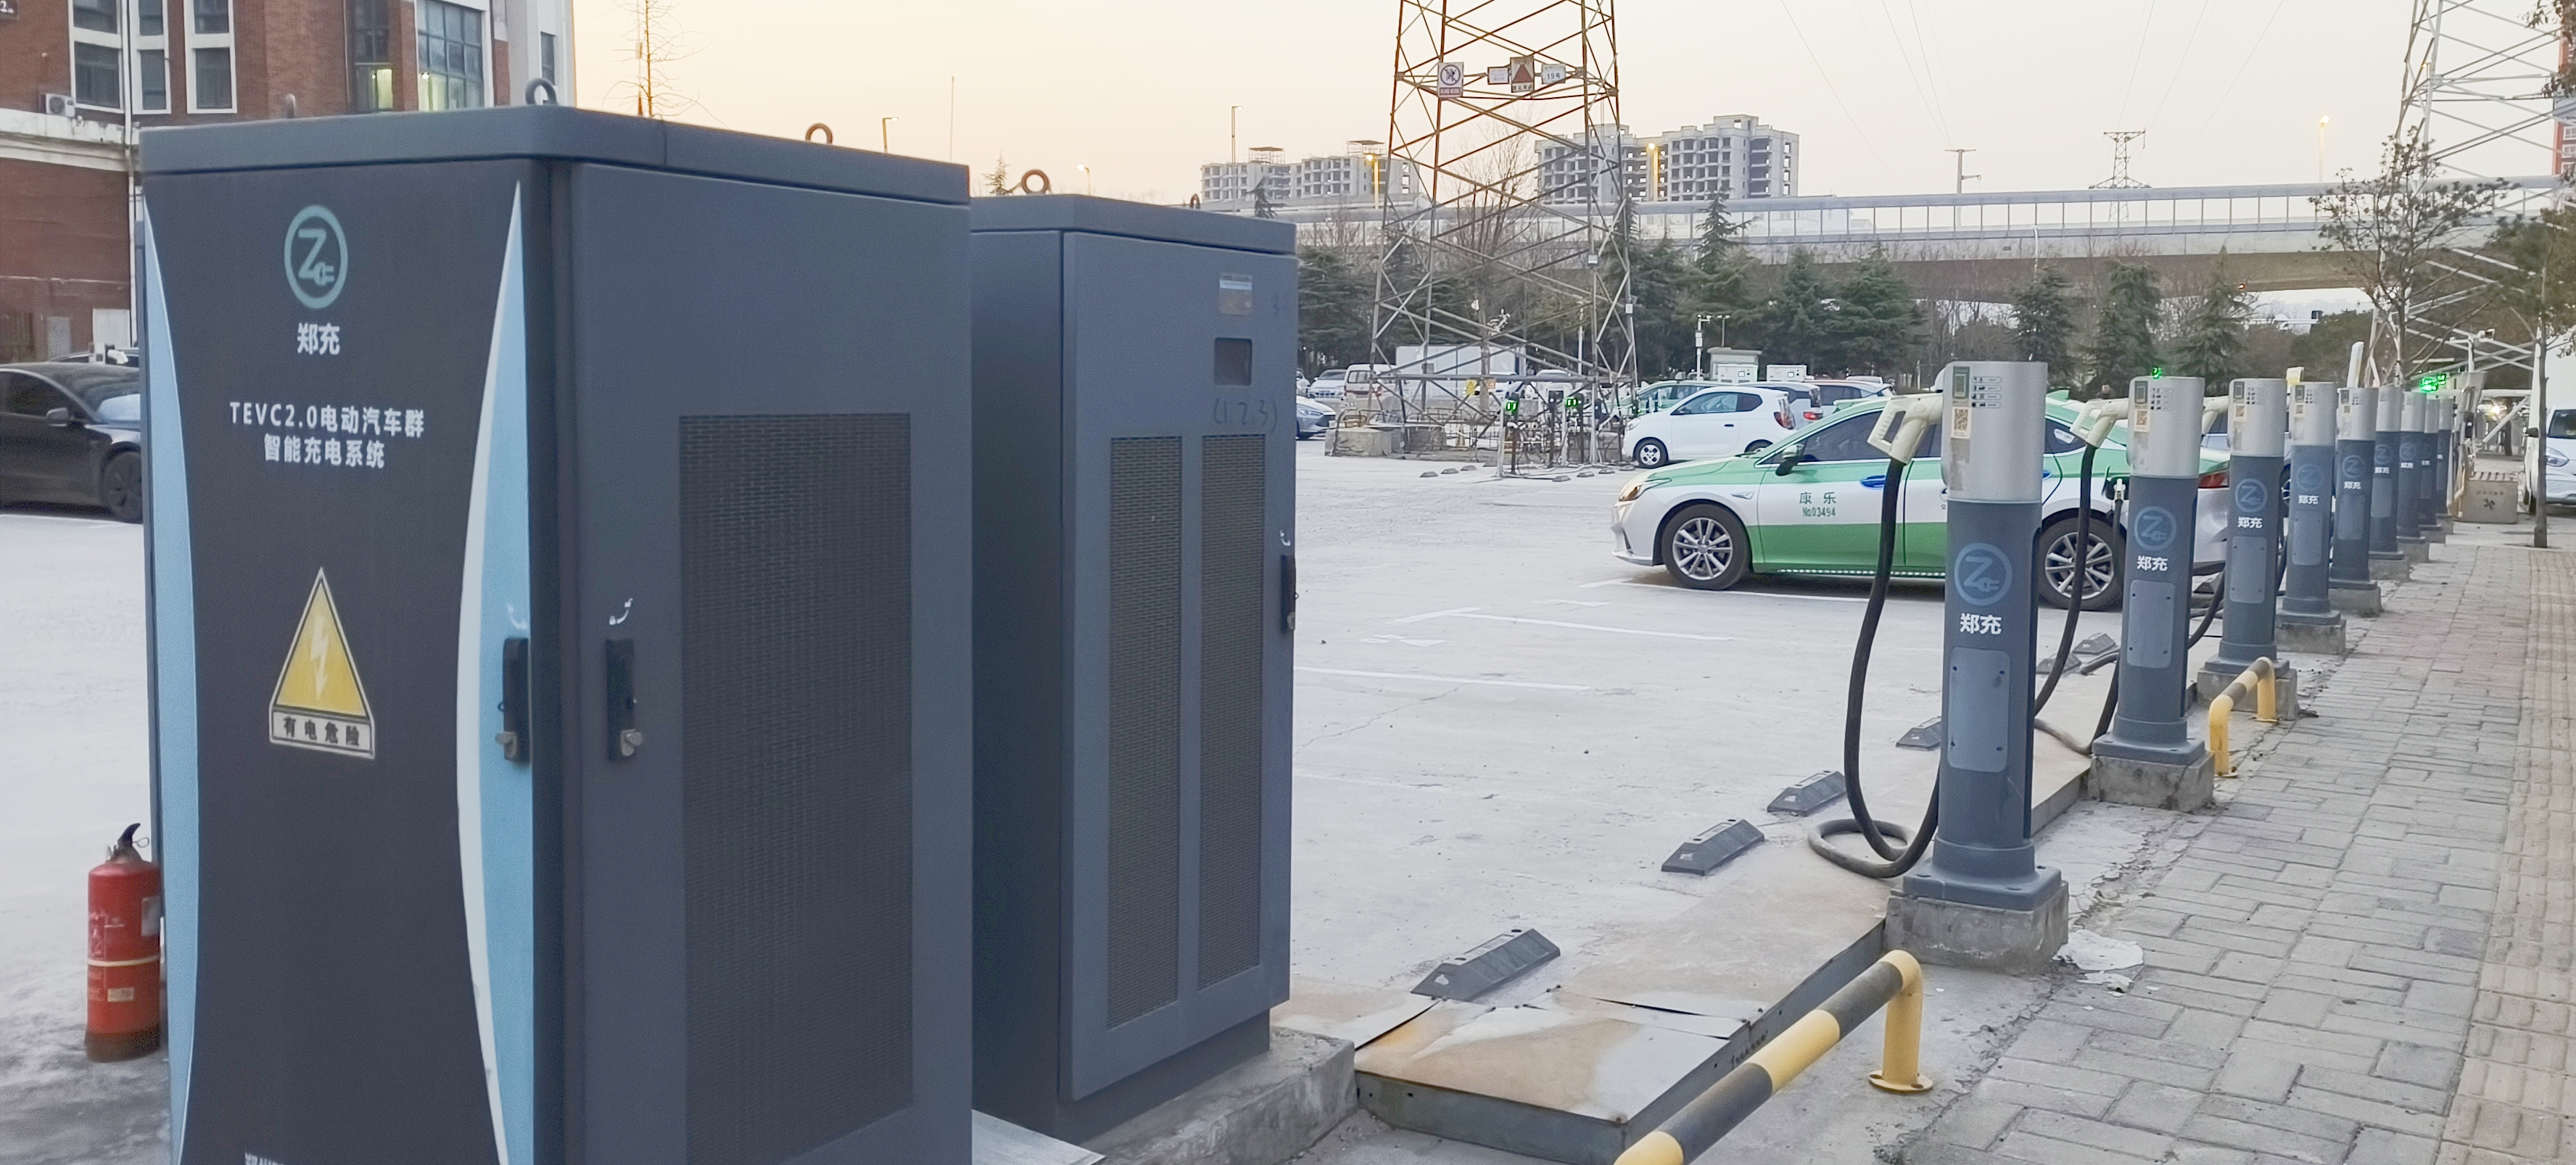 布局电动汽车充电基础设施10年后郑州将有110万个“充电桩”(图1)